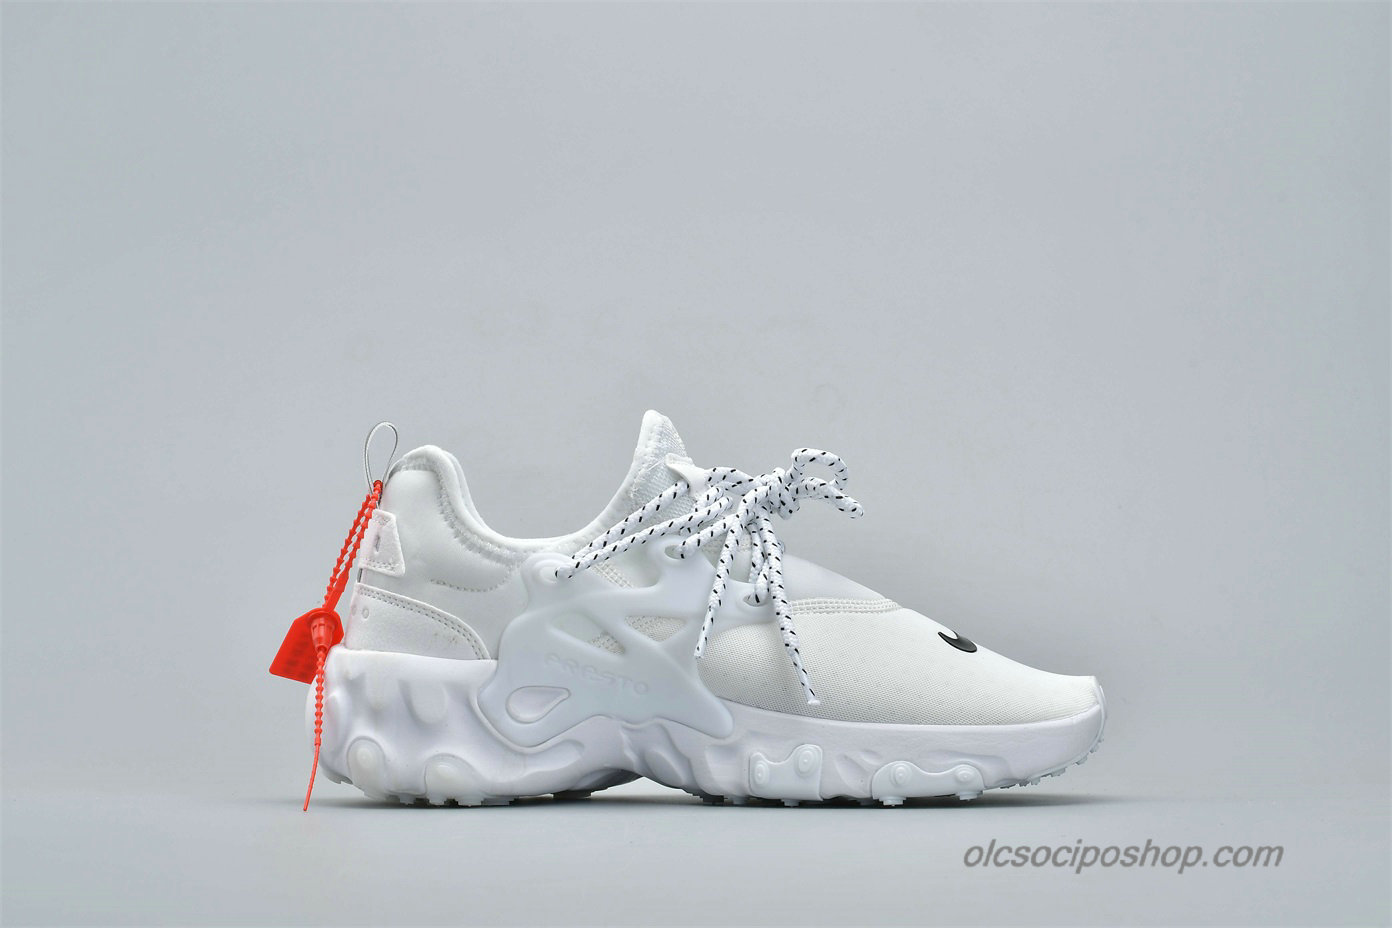 Nike Presto React Fehér/Fekete Cipők (AV2605-100) - Kattintásra bezárul